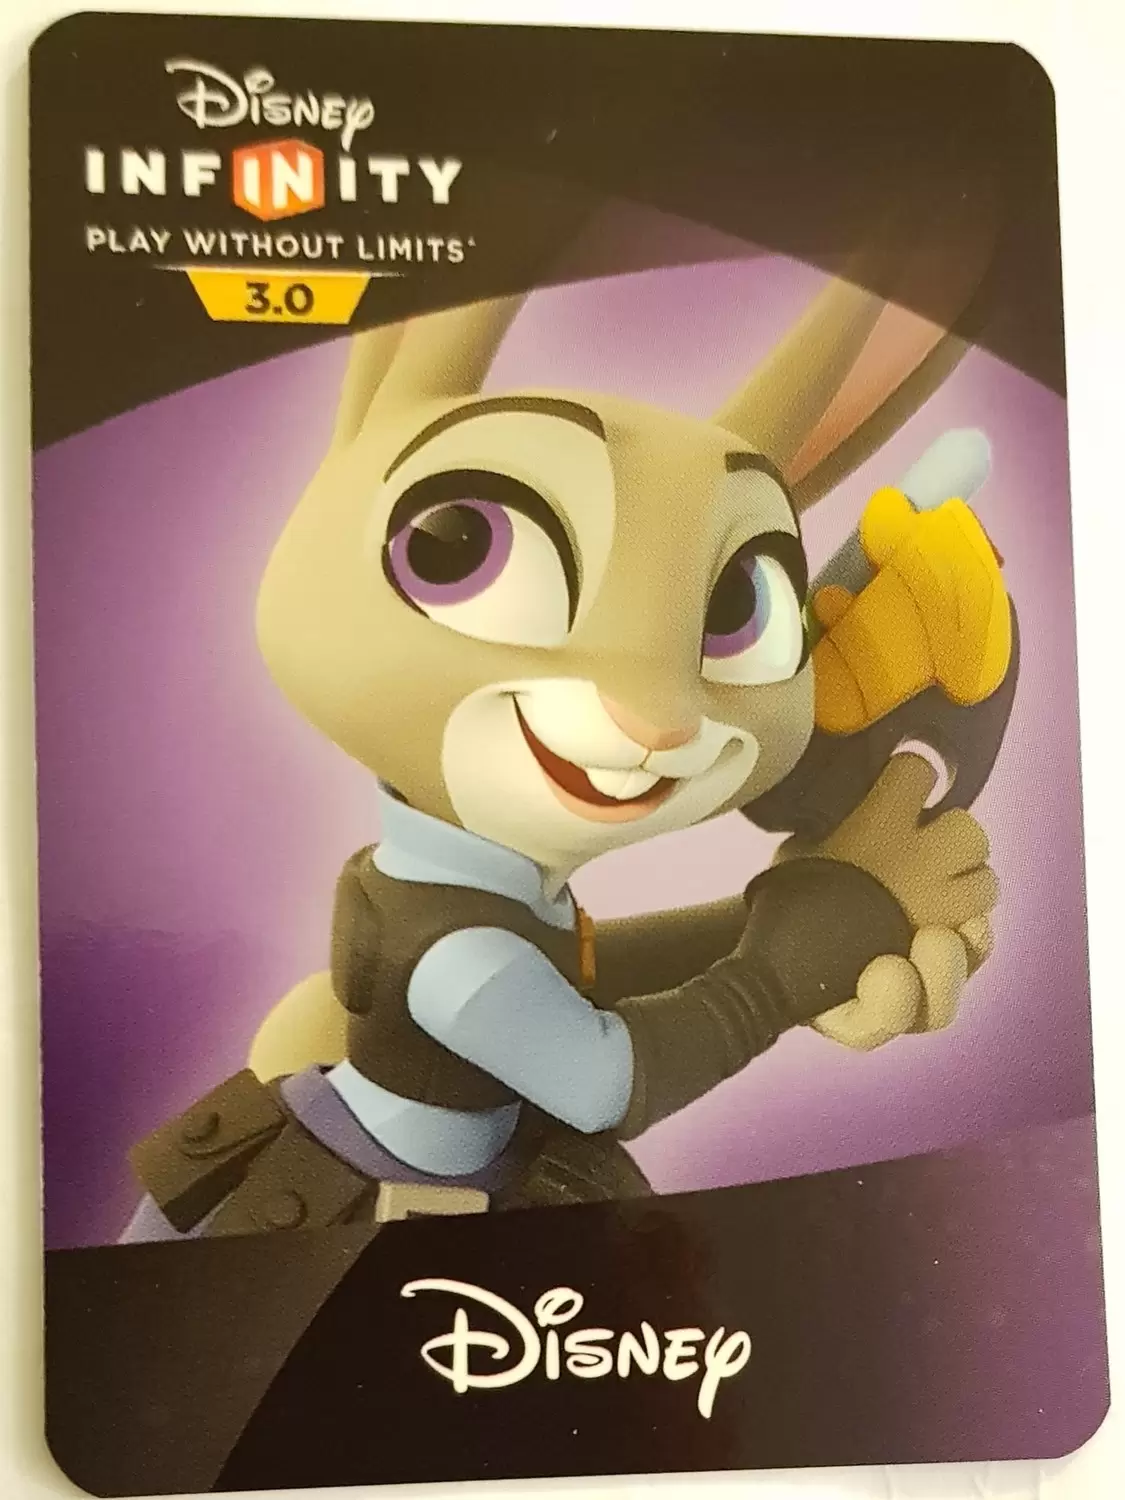 Disney Infinity 3.0 cards - Judy Hopps